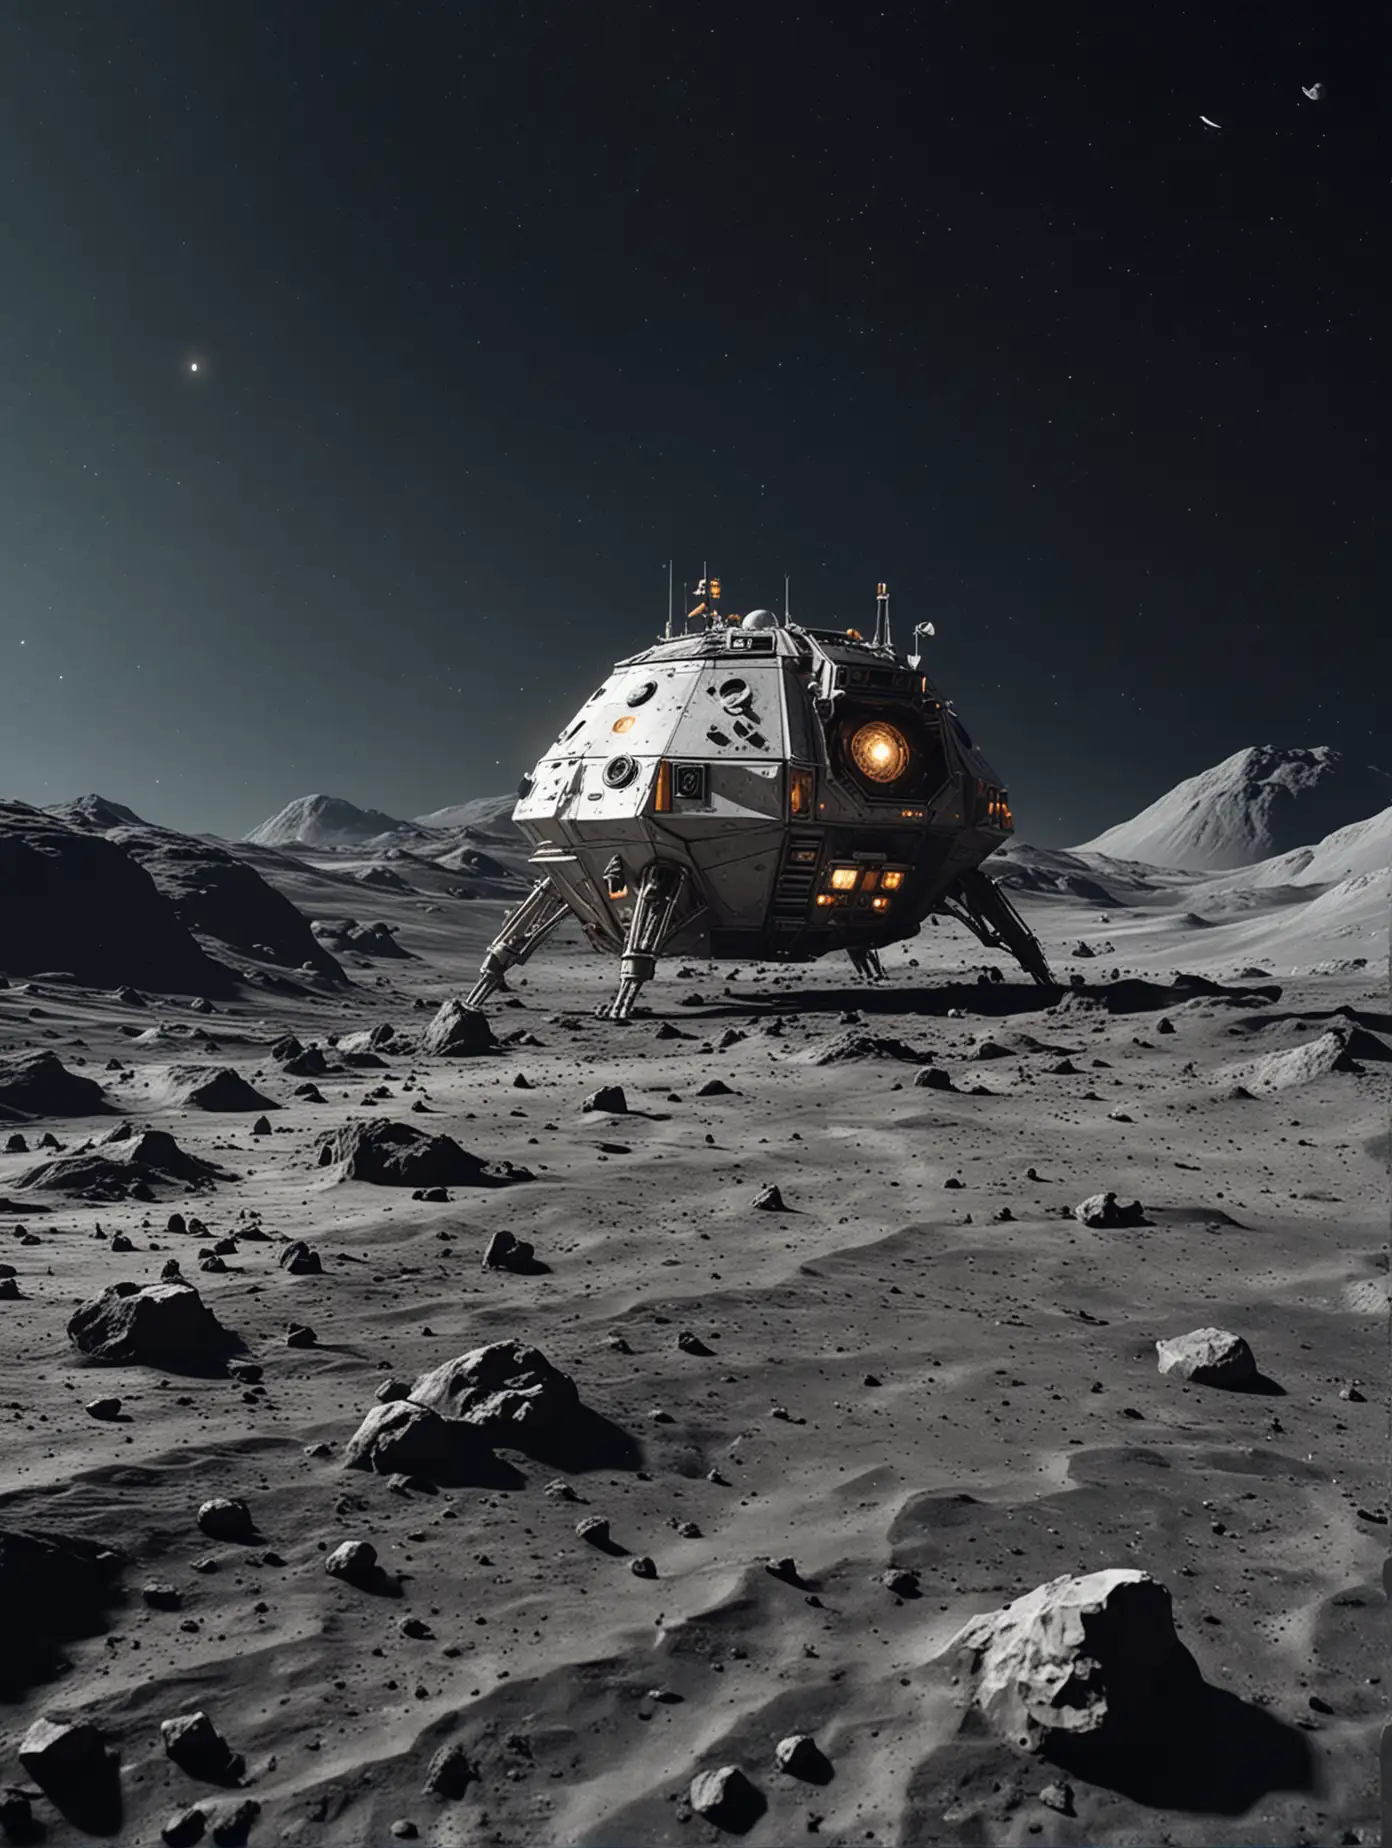 Low Poly Art Spaceship Landing on Moon